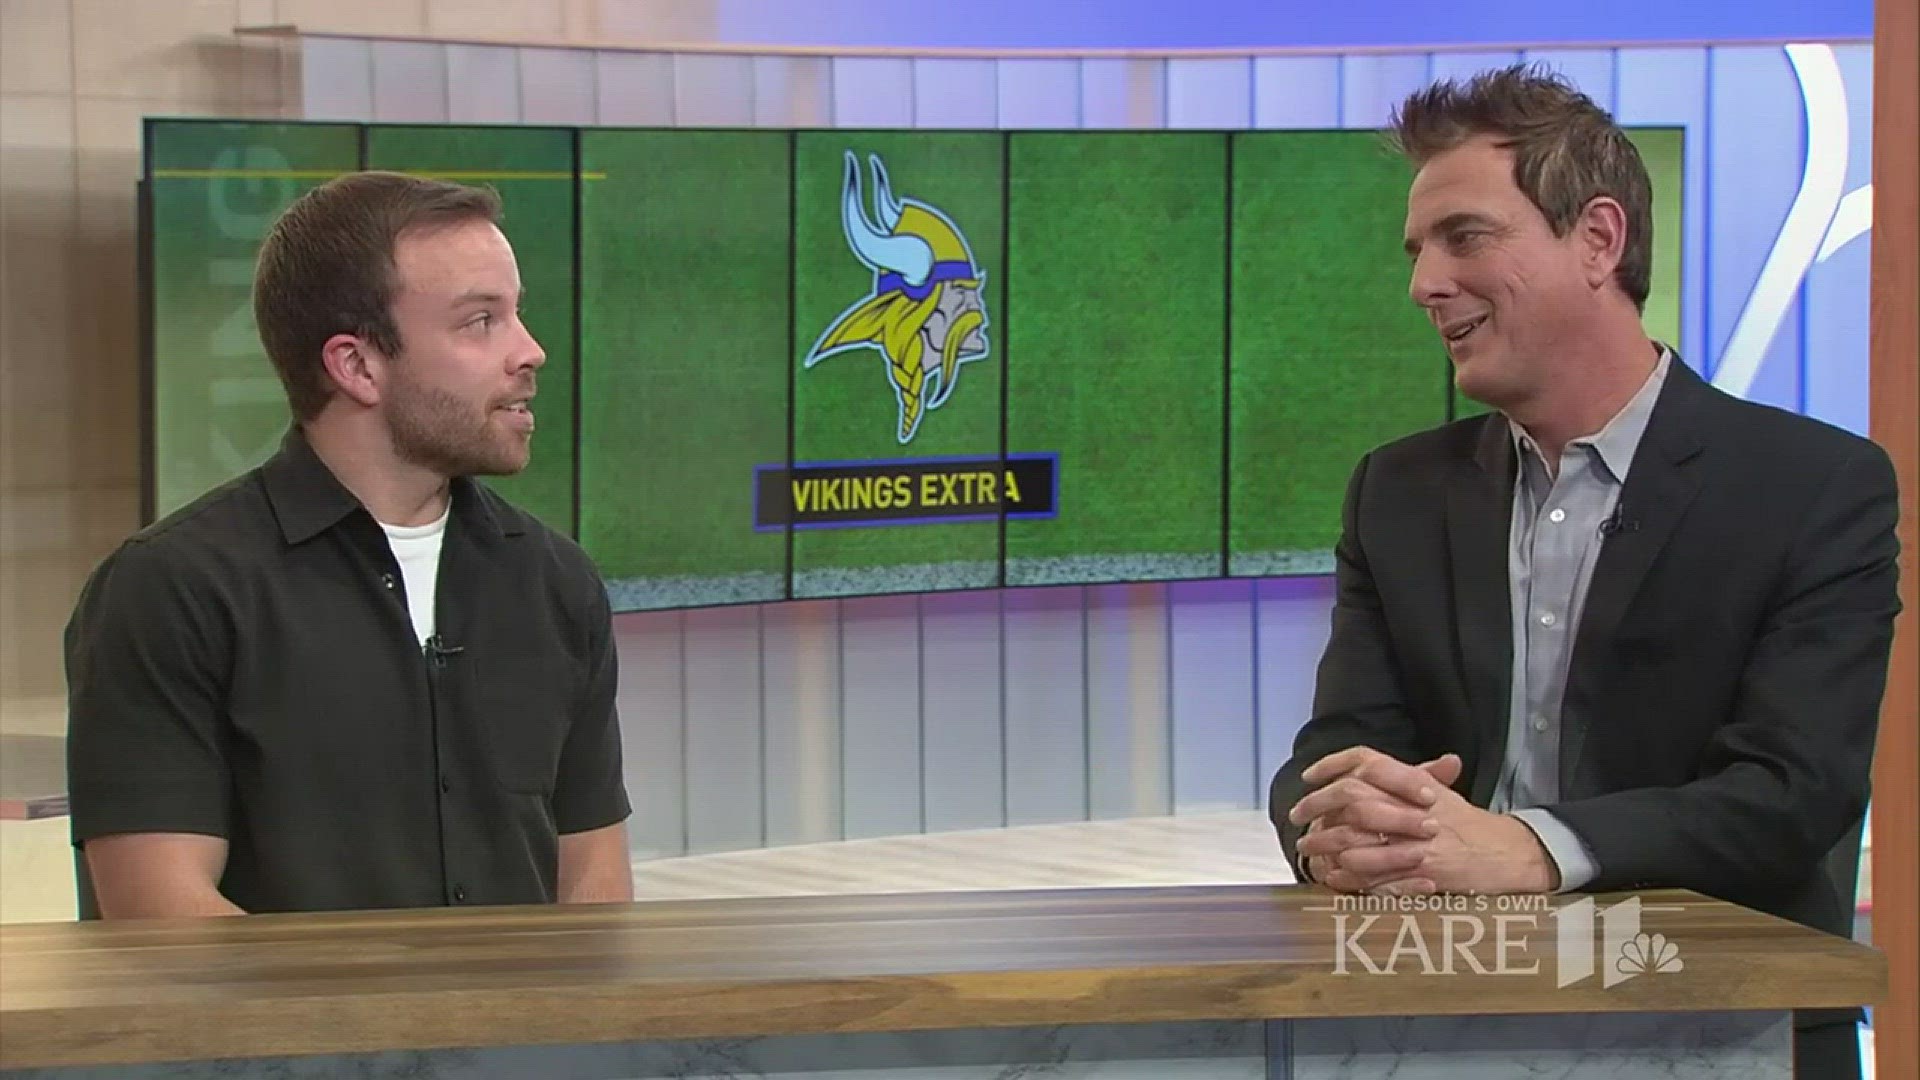 Perk discusses 9-2 Vikings with Star Tribune writer Andrew Krammer. http://www.kare11.com/sports/vikings-beat-writer-provides-team-insight/494805790